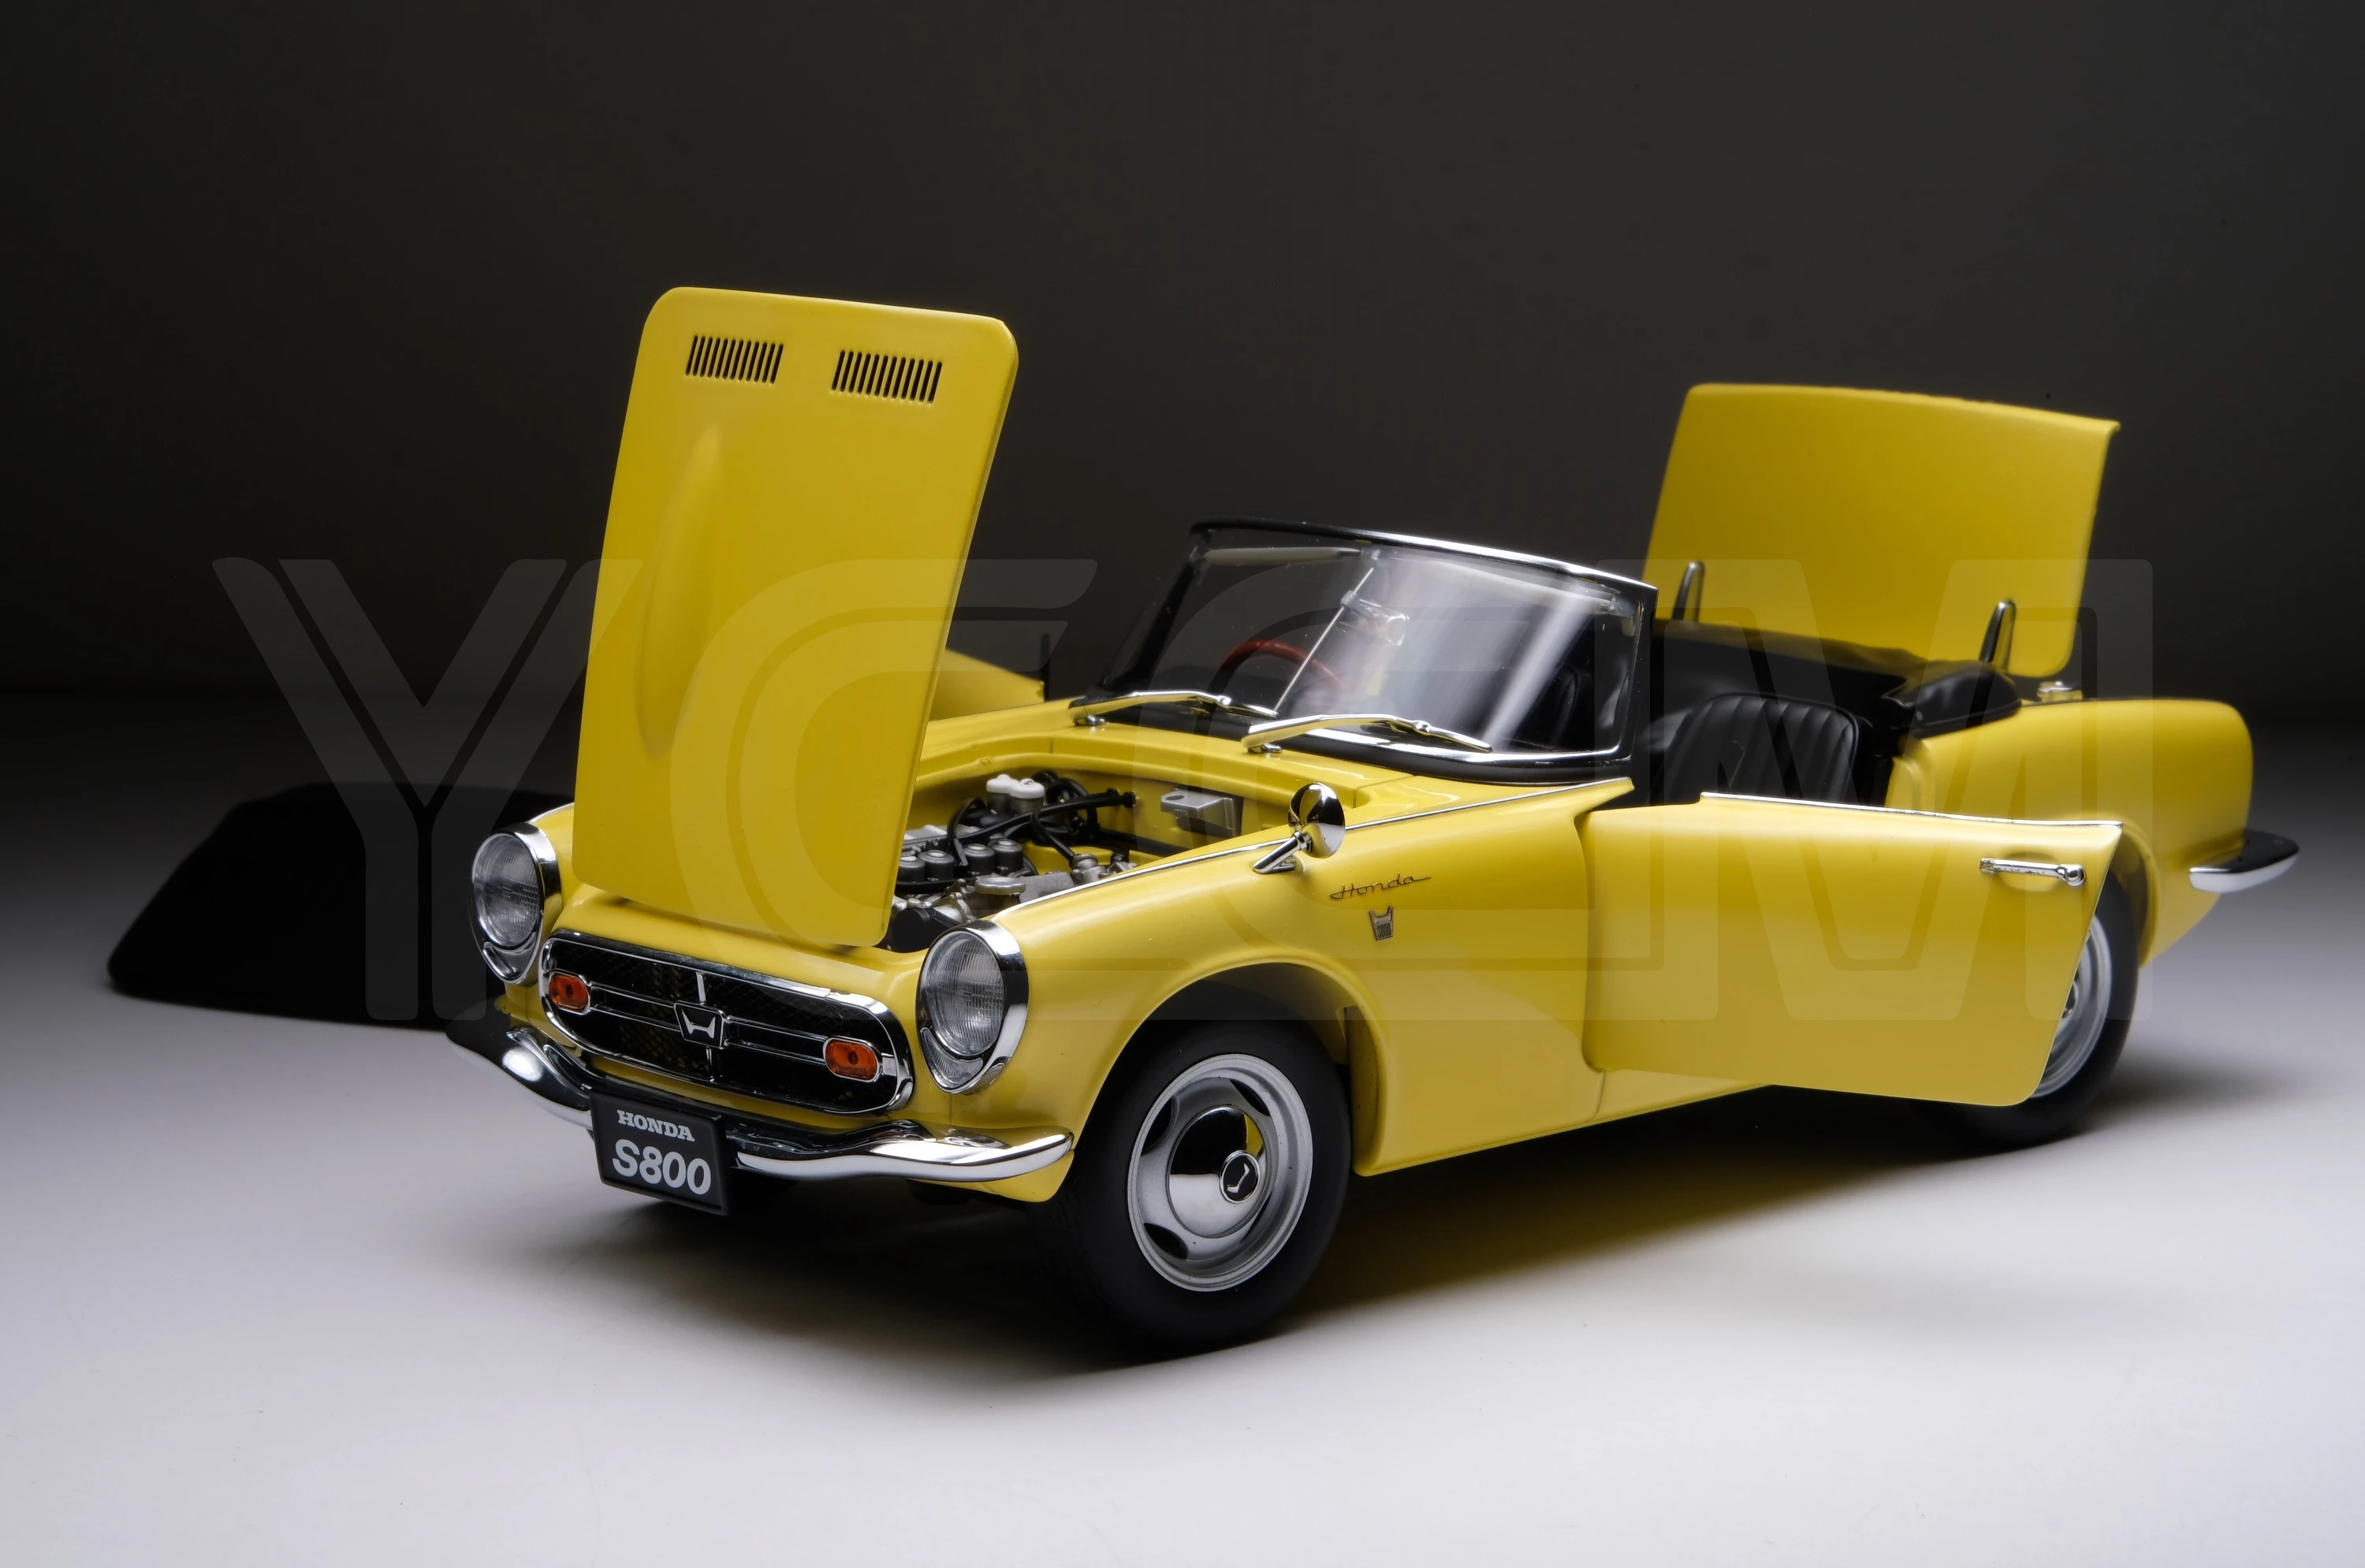 Autoart-モデル: HONDA S800車,黄色のjdm,限定版,樹脂合金スタティック